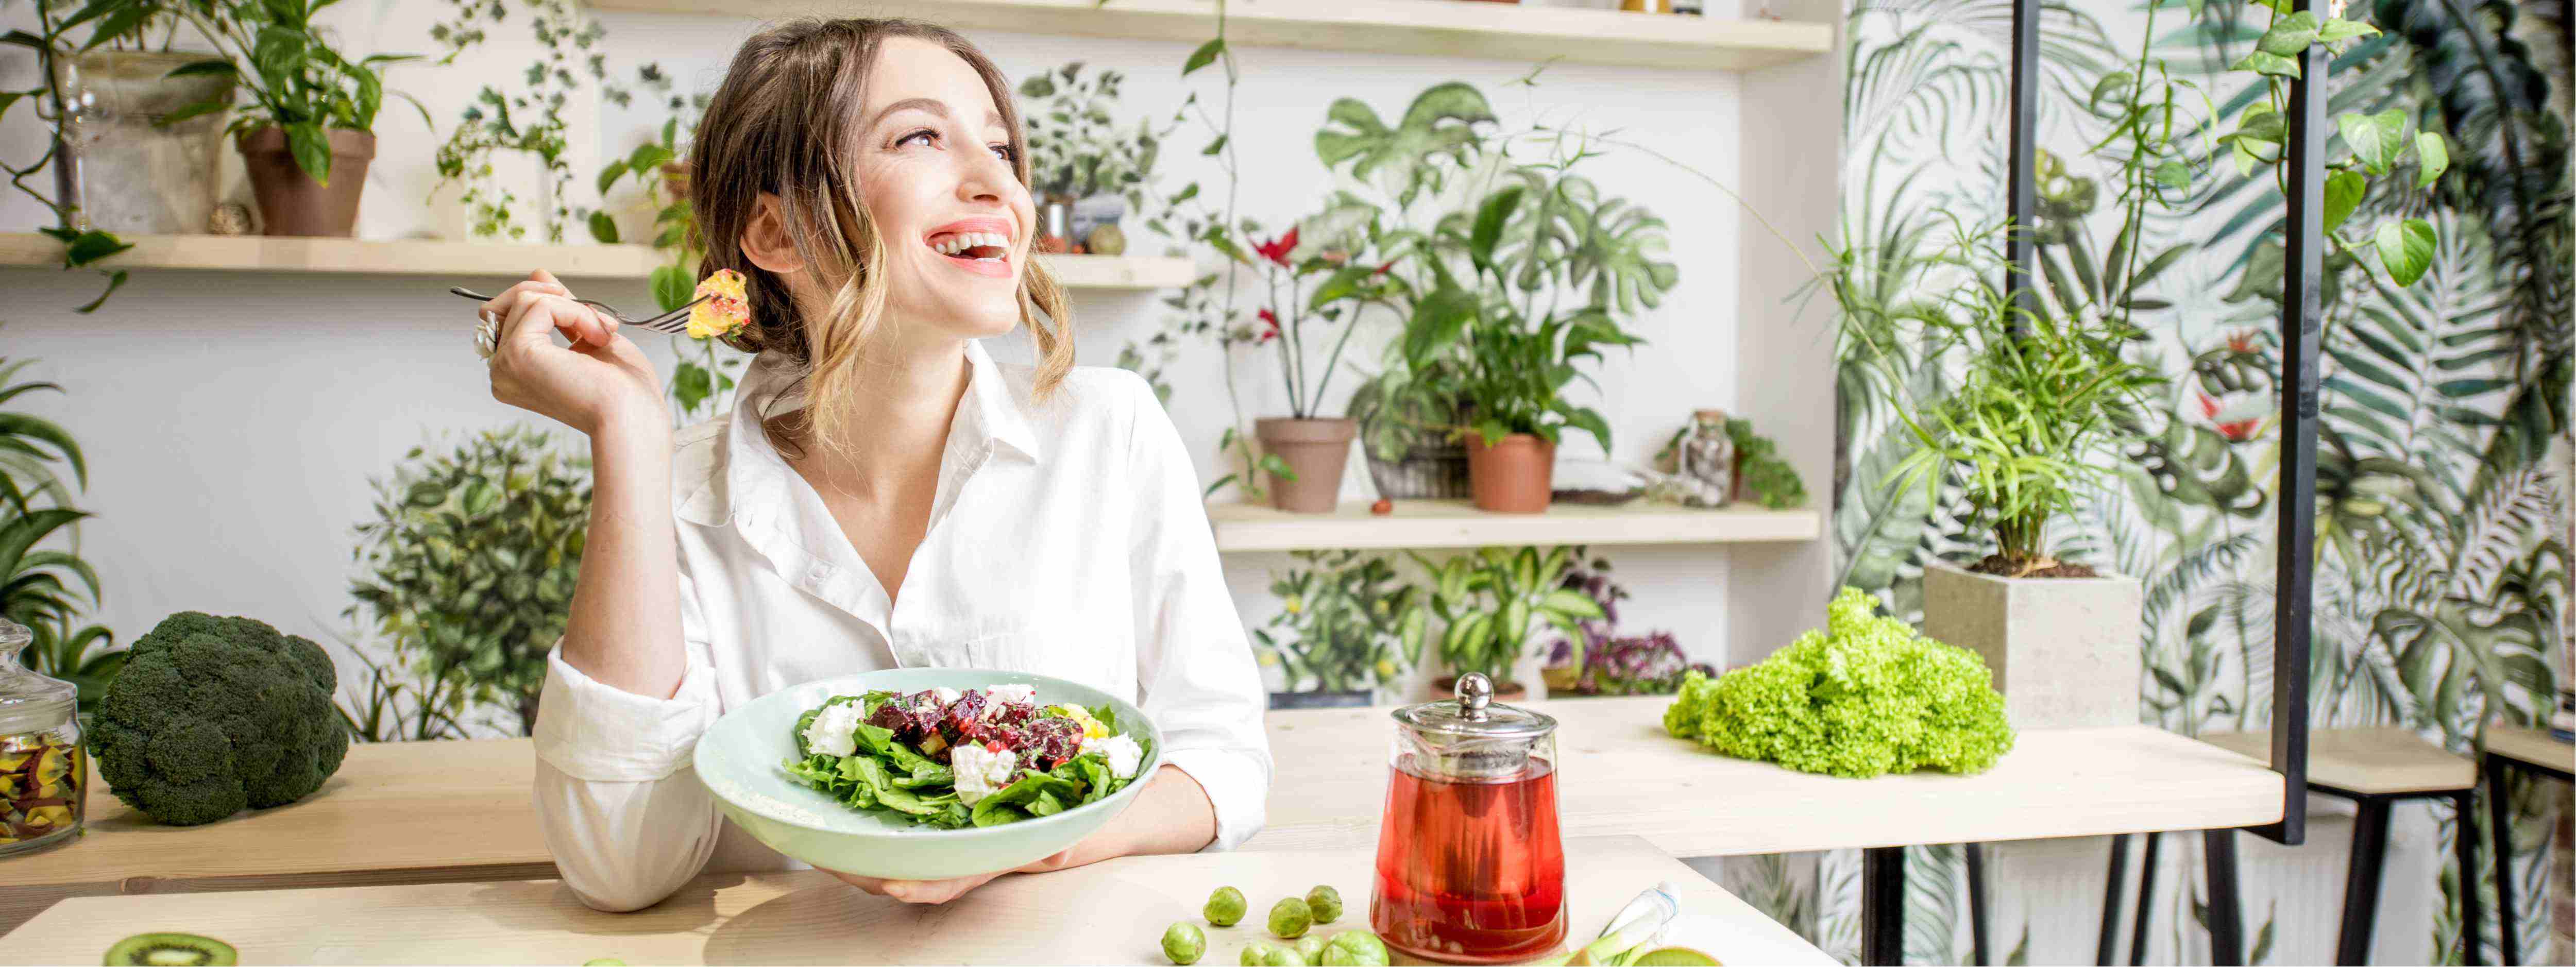 Jarný jedálniček – vsaďte na ľahké jedlá, ktoré vás nabijú energiou